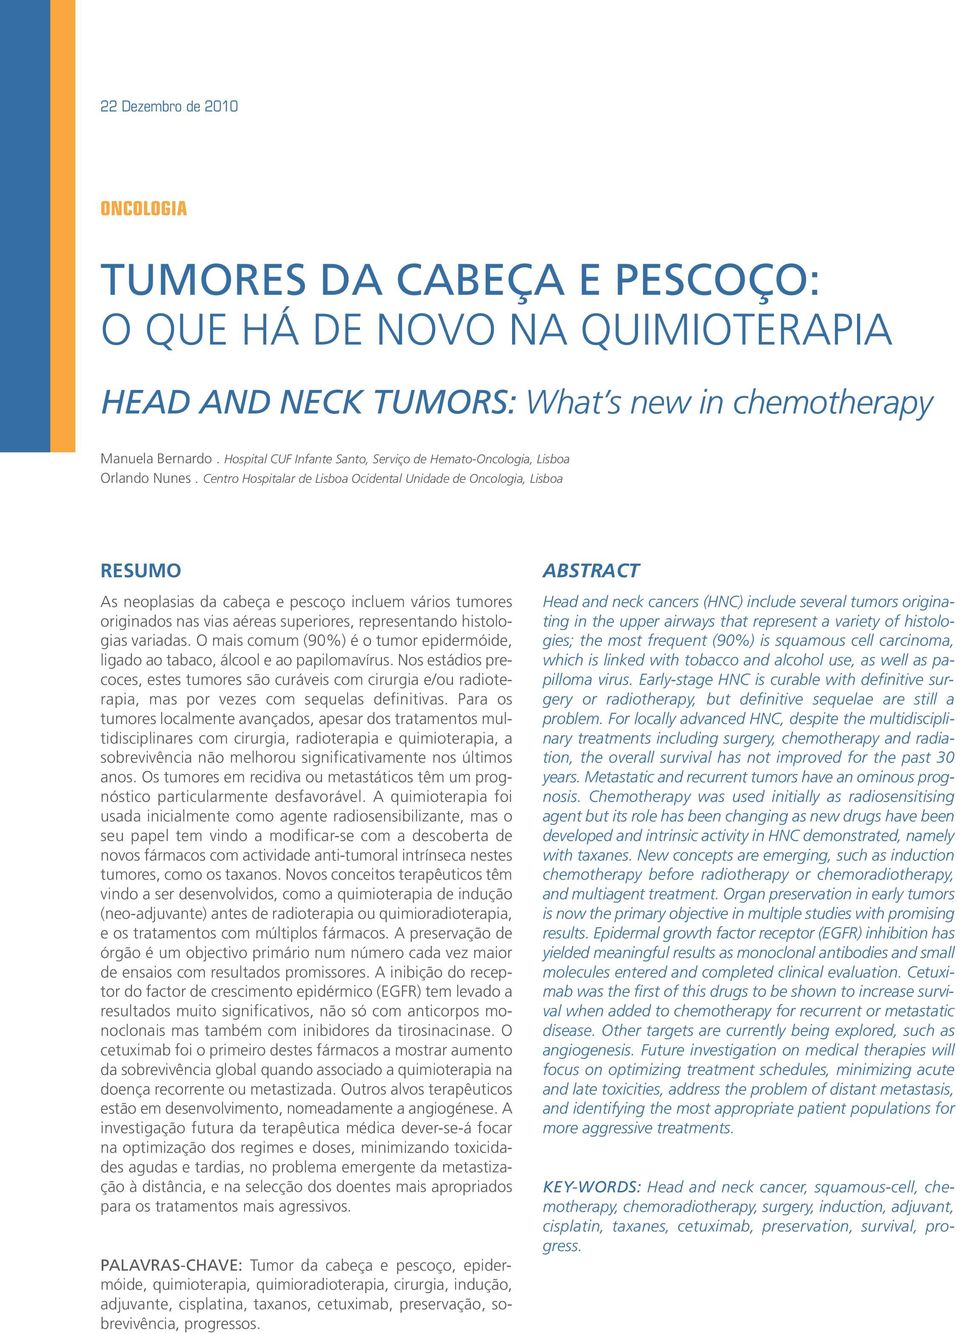 Centro Hospitalar de Lisboa Ocidental Unidade de Oncologia, Lisboa RESUMO As neoplasias da cabeça e pescoço incluem vários tumores originados nas vias aéreas superiores, representando histologias